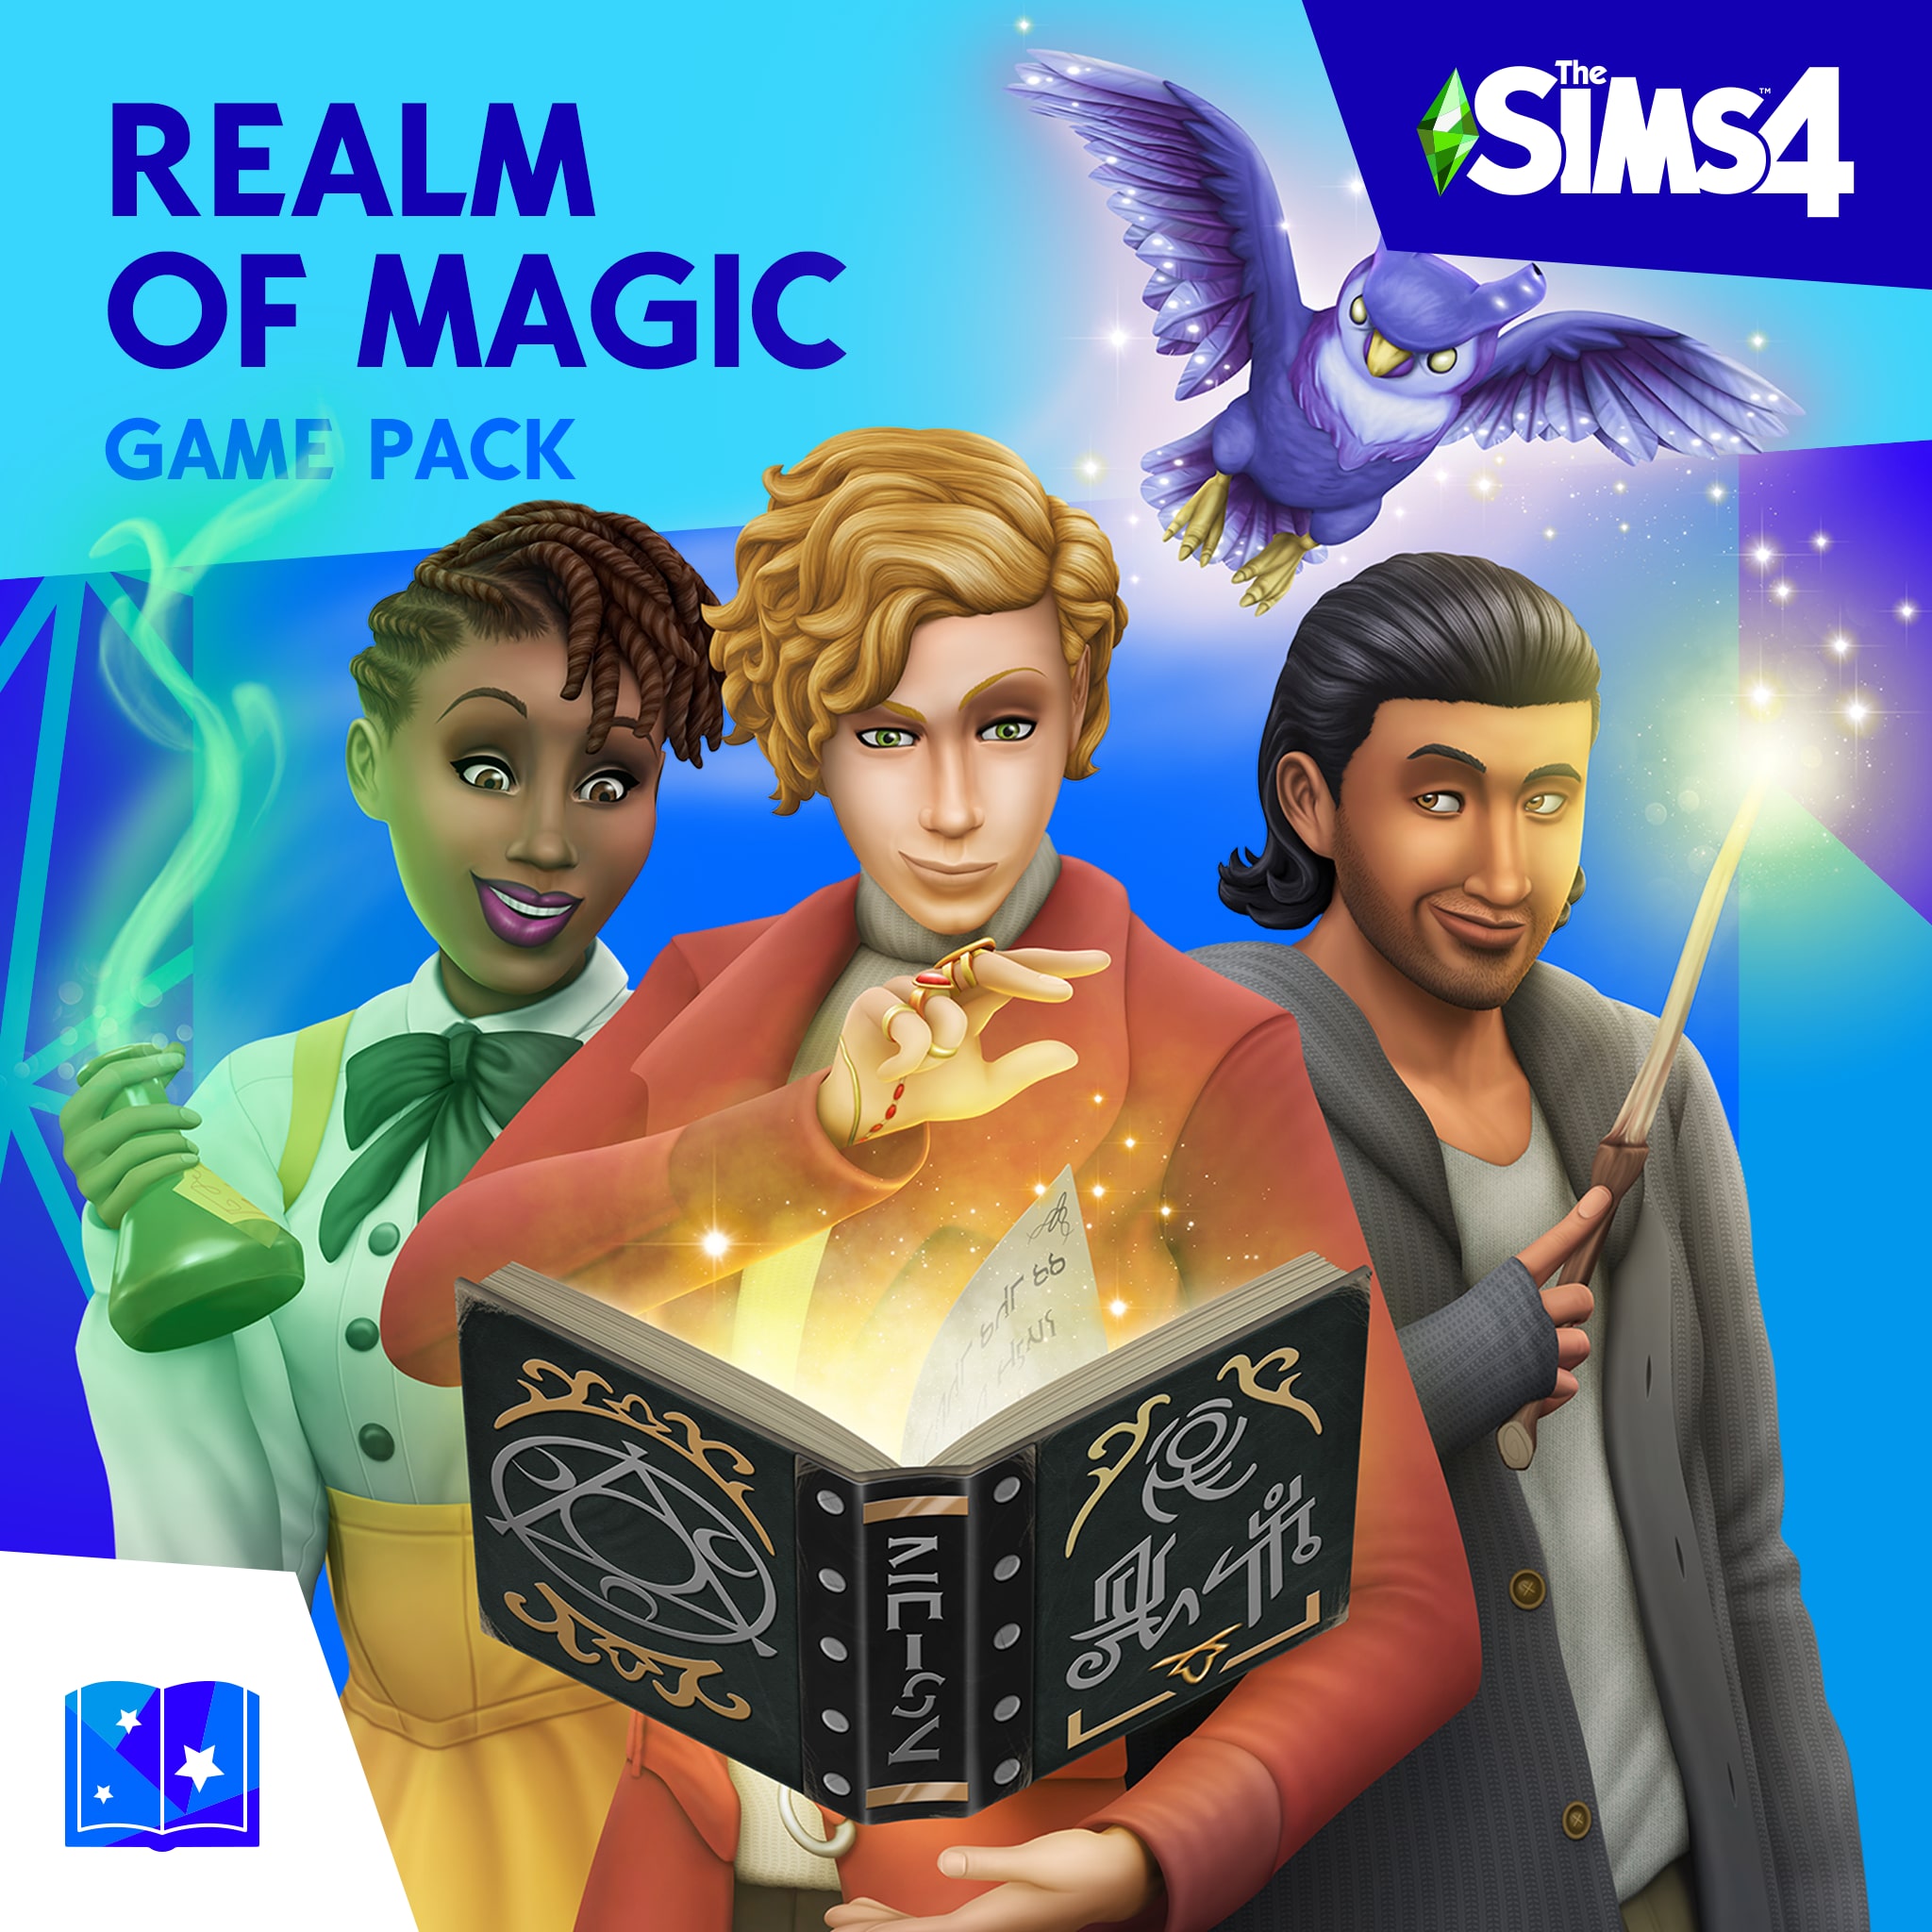 Los Sims™ 4 Y El Reino de la Magia